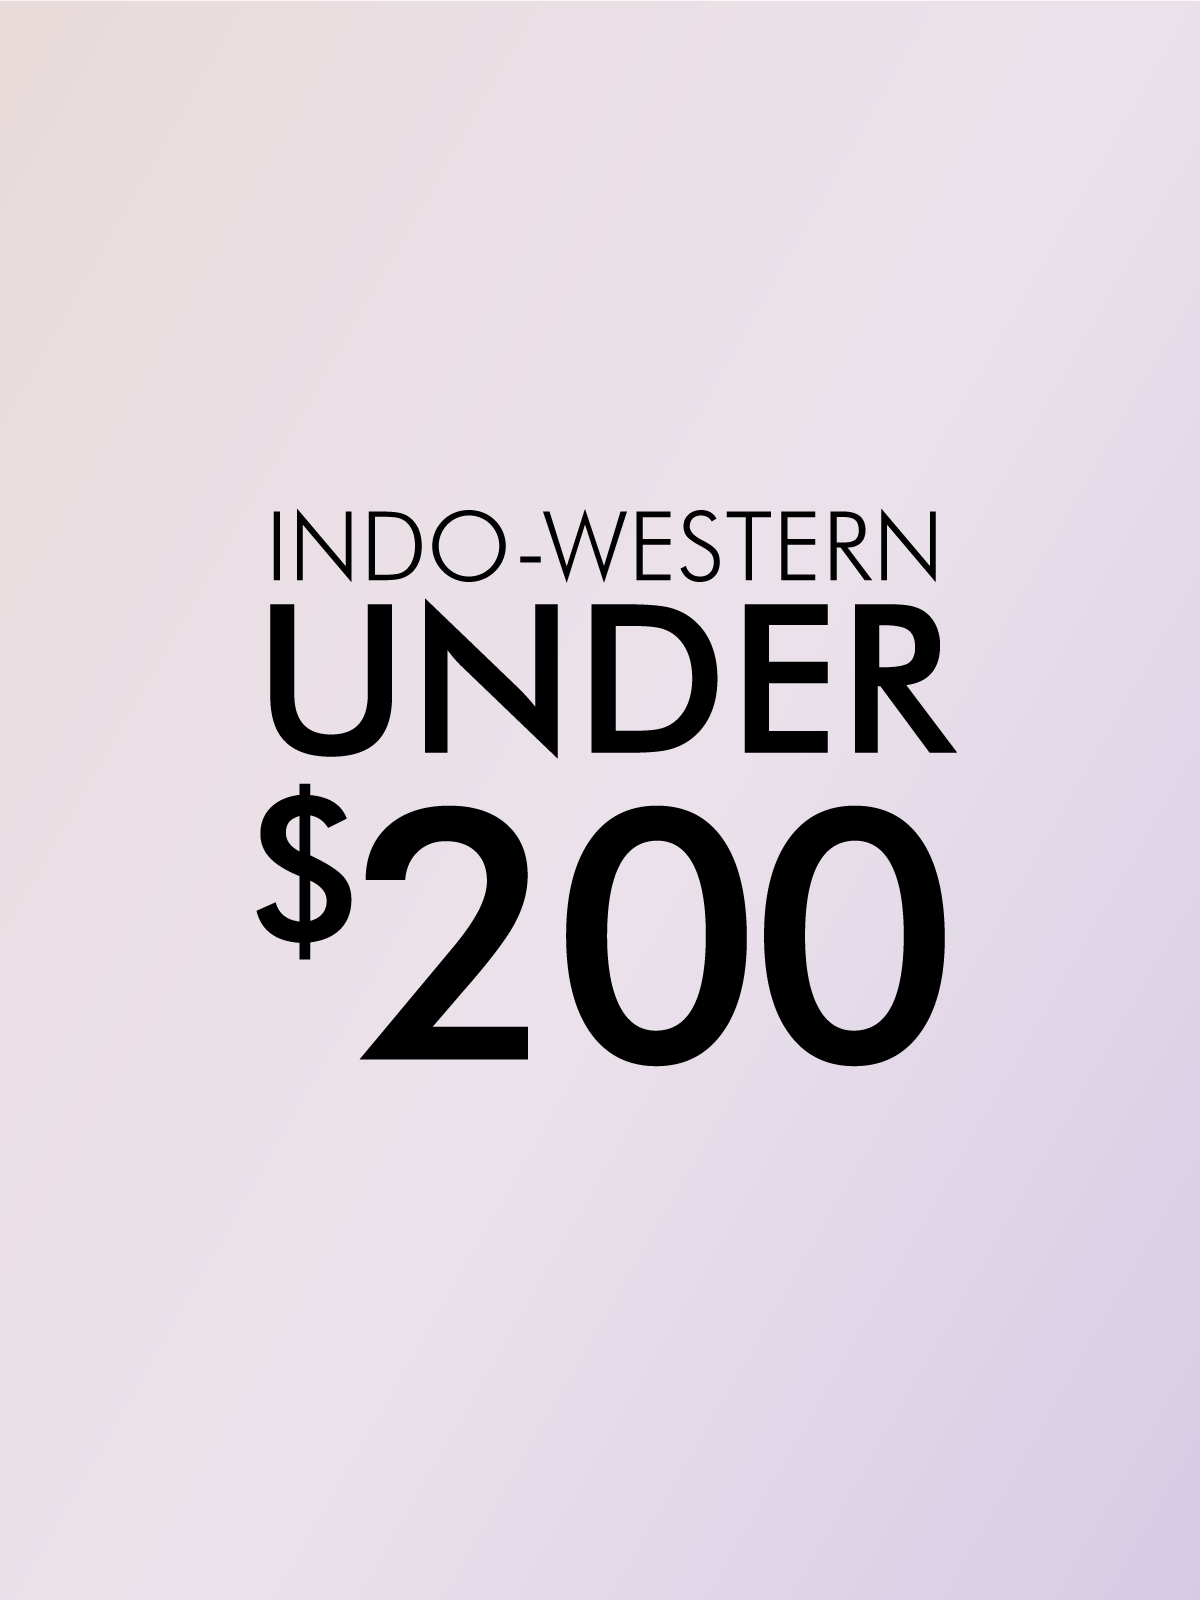 INDO-WESTERN UNDER $200